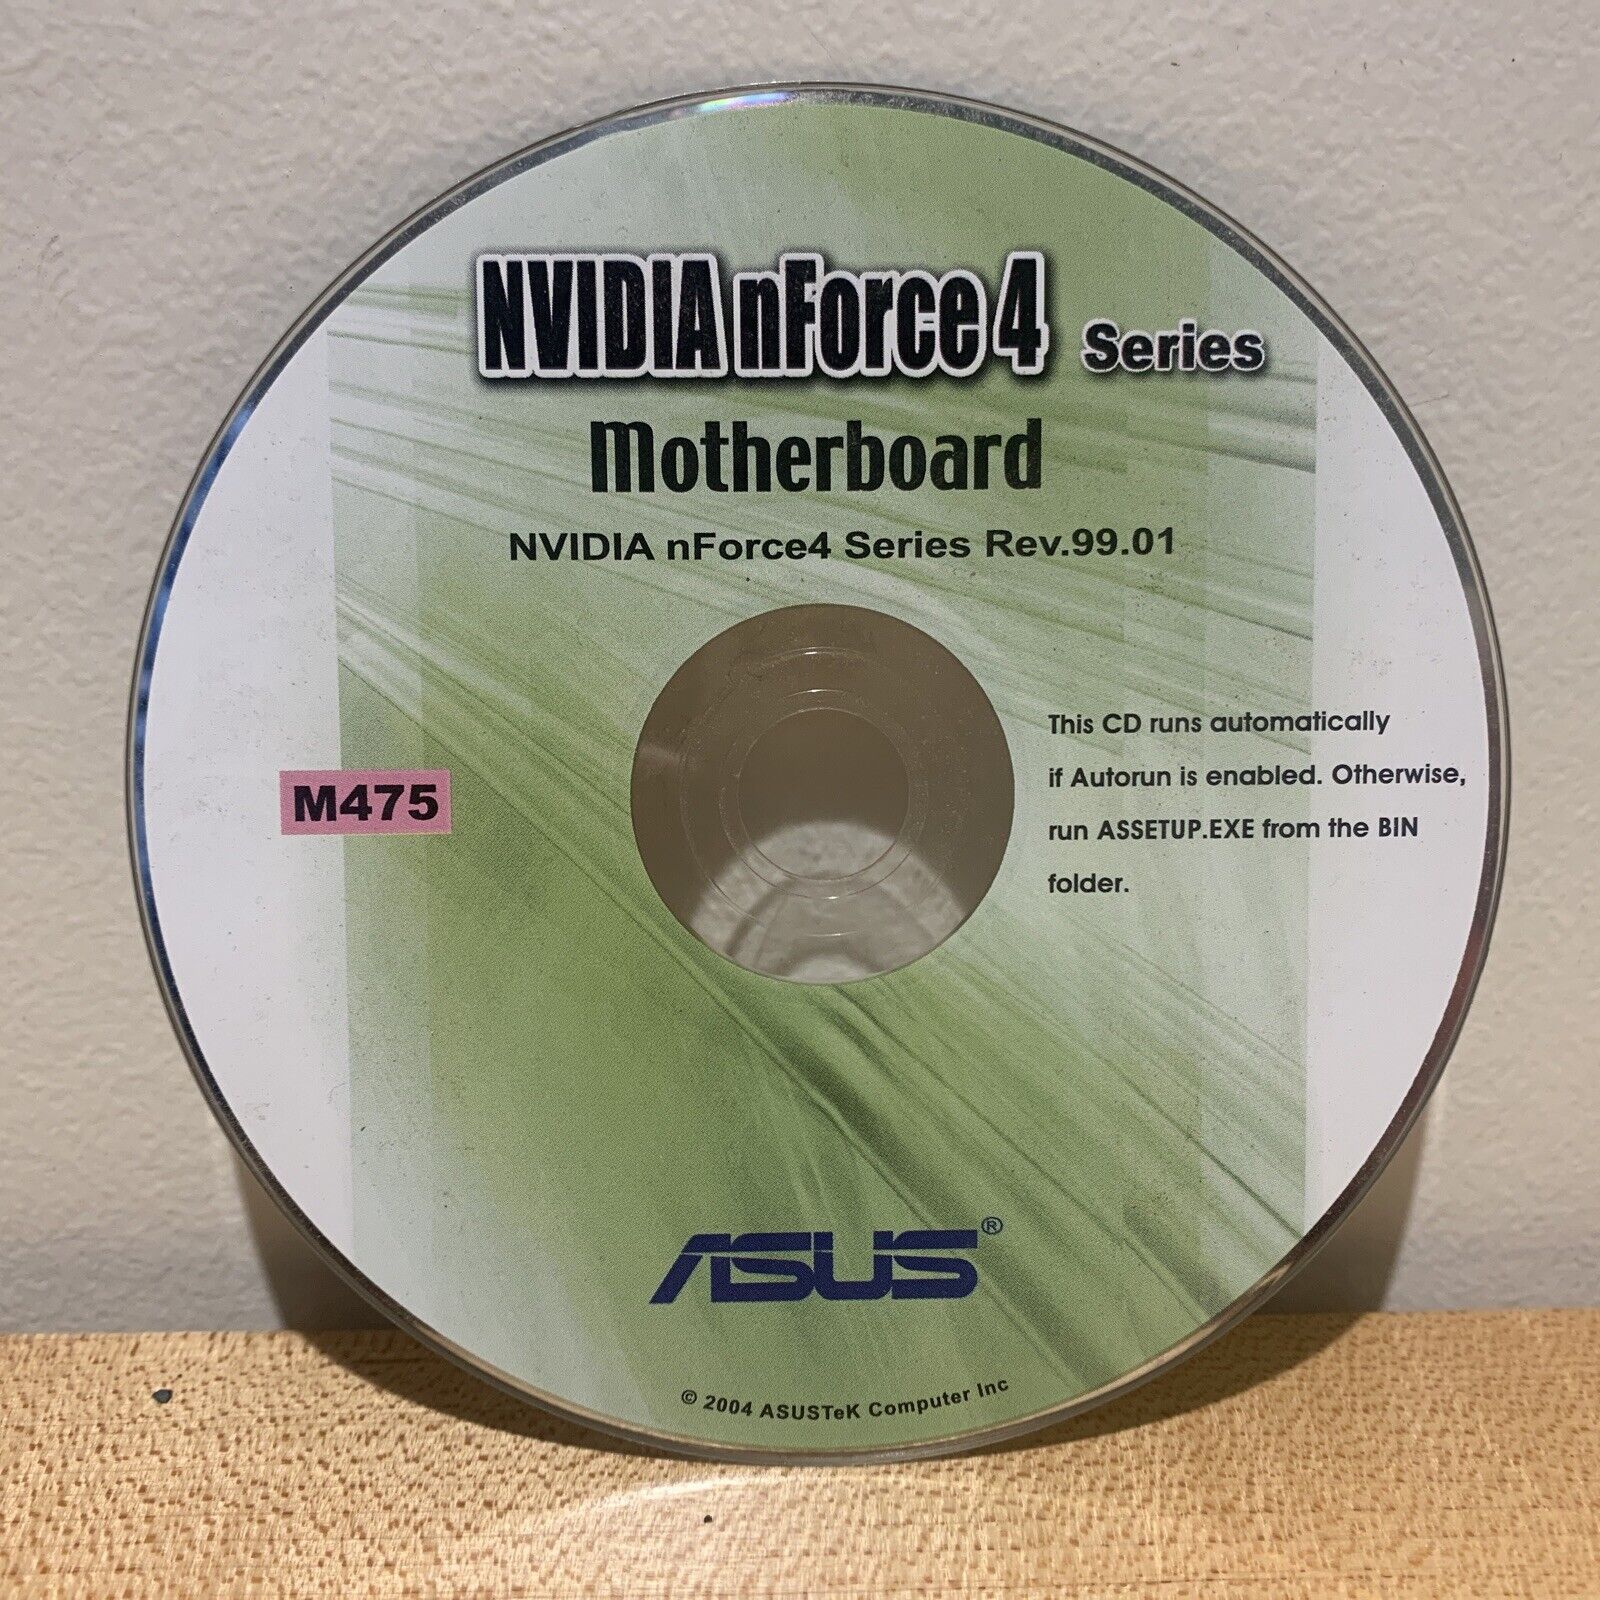 Asus NVIDIA nForce4 Series Motherboard Software CD & Bonus WinDVD Suite